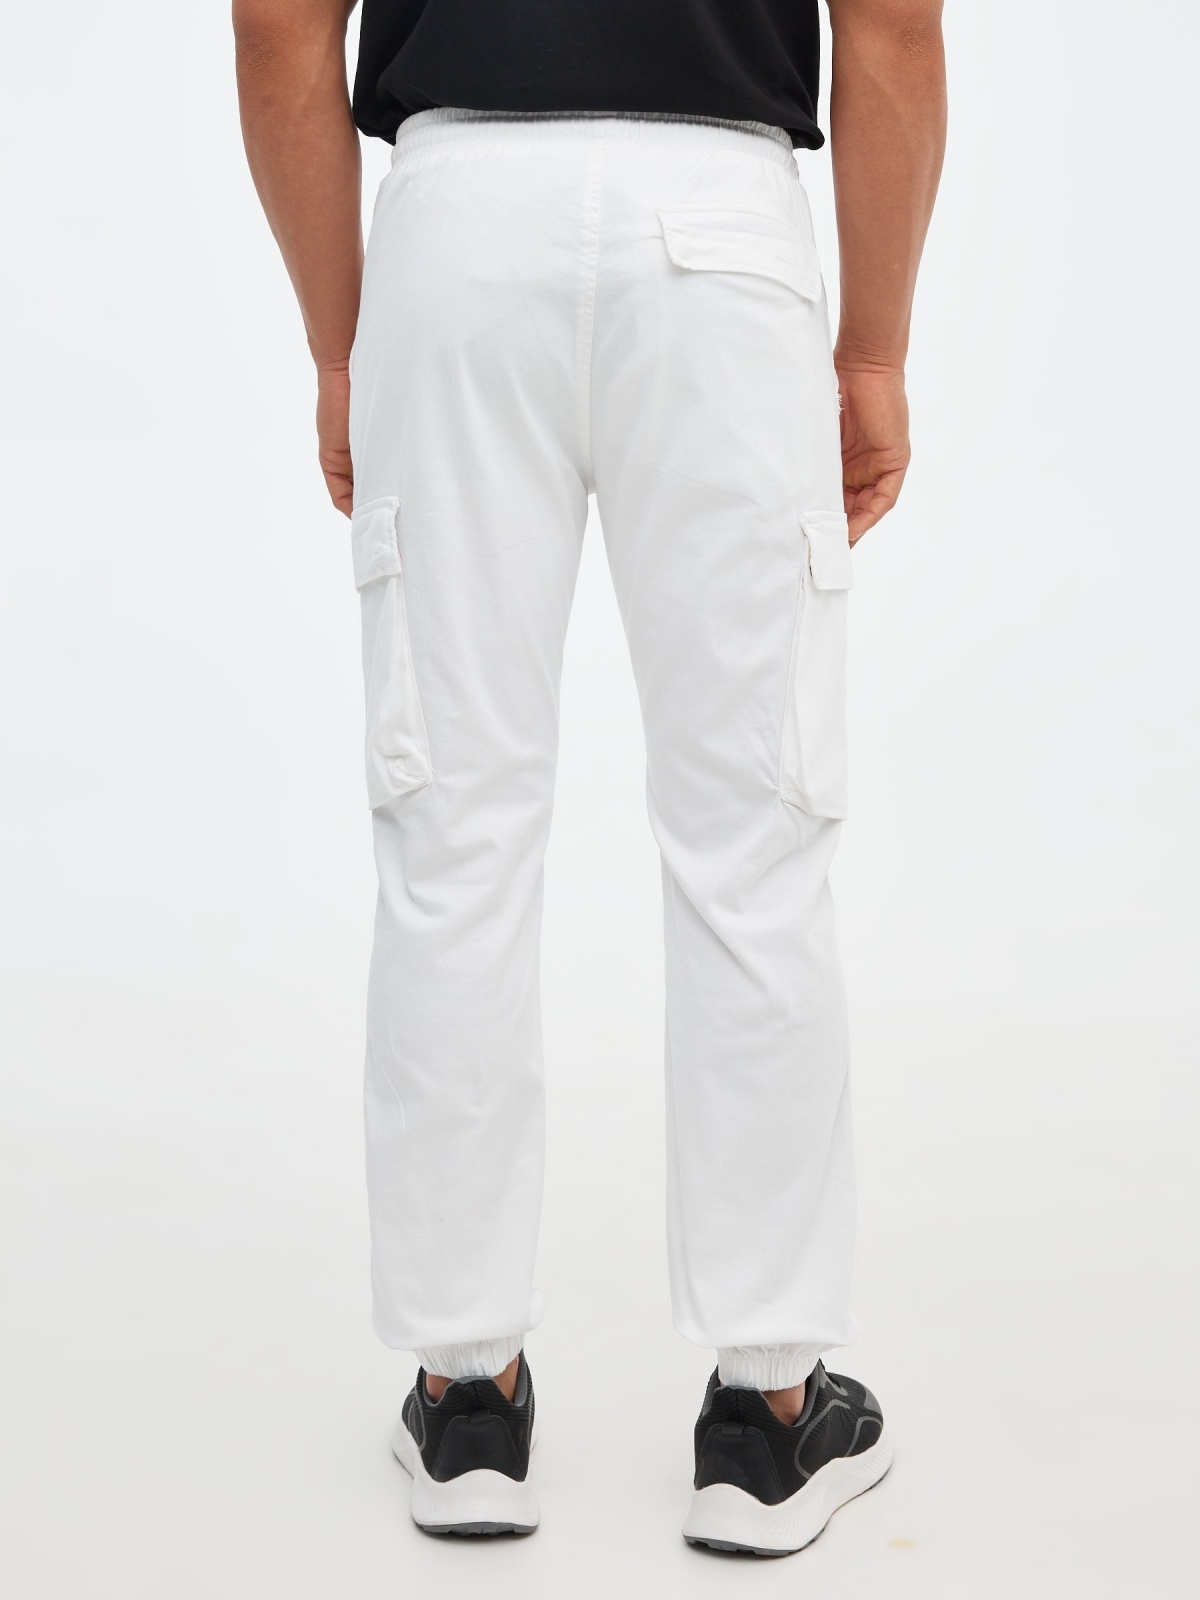 Pantalón jogger con bolsillos blanco vista media trasera